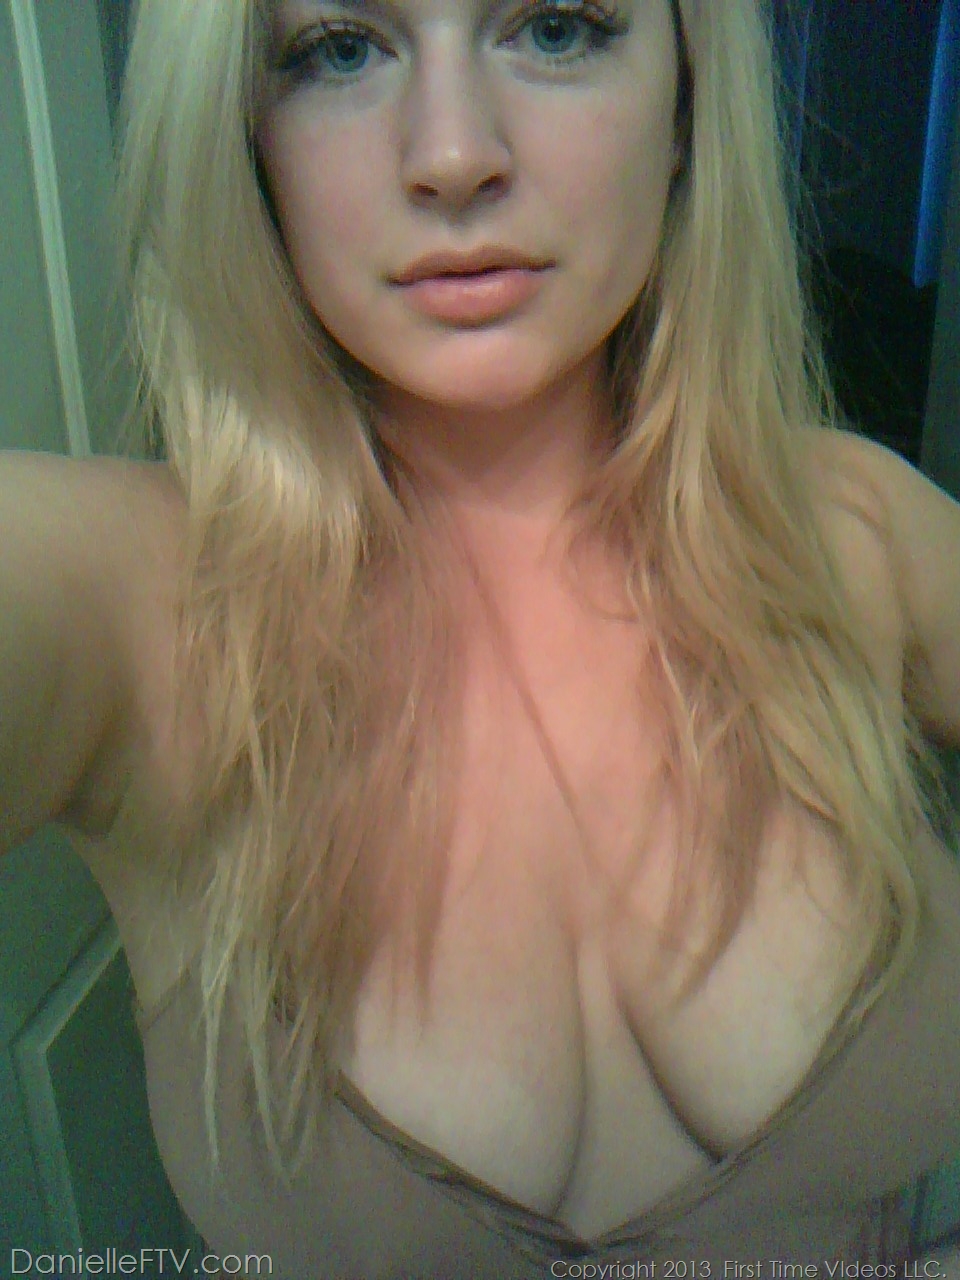 Blonde amateur Danielle Ftv dons numerous outfits for non nude selfies porn photo #422634186